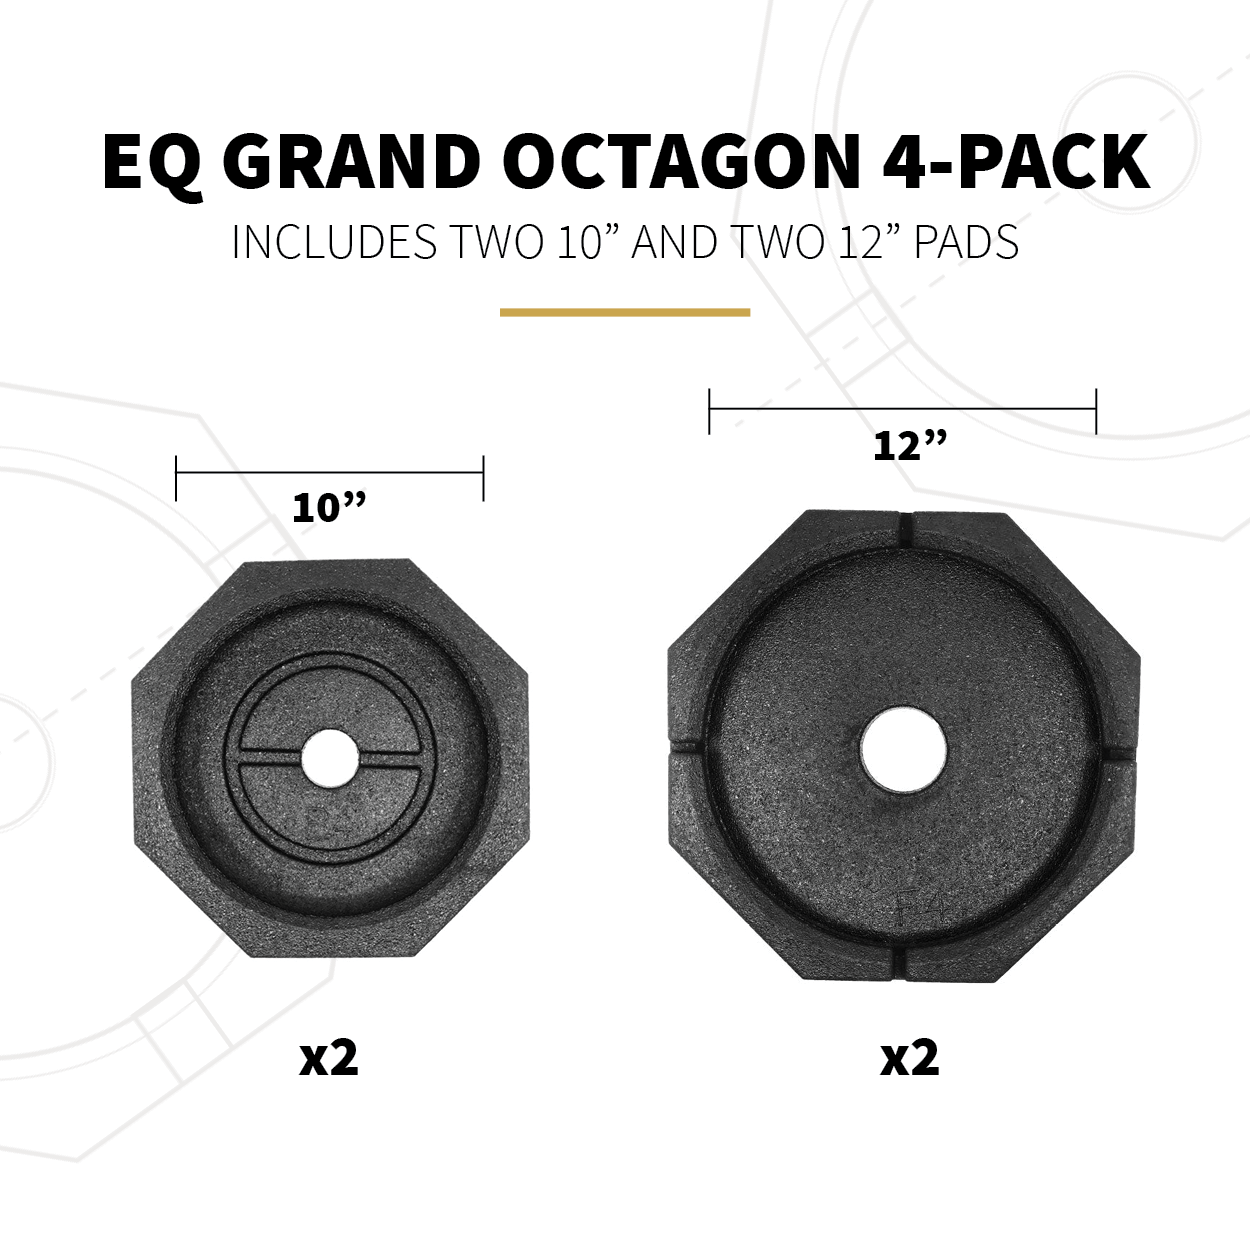 EQ Grand Octagon 4-Pack Specs